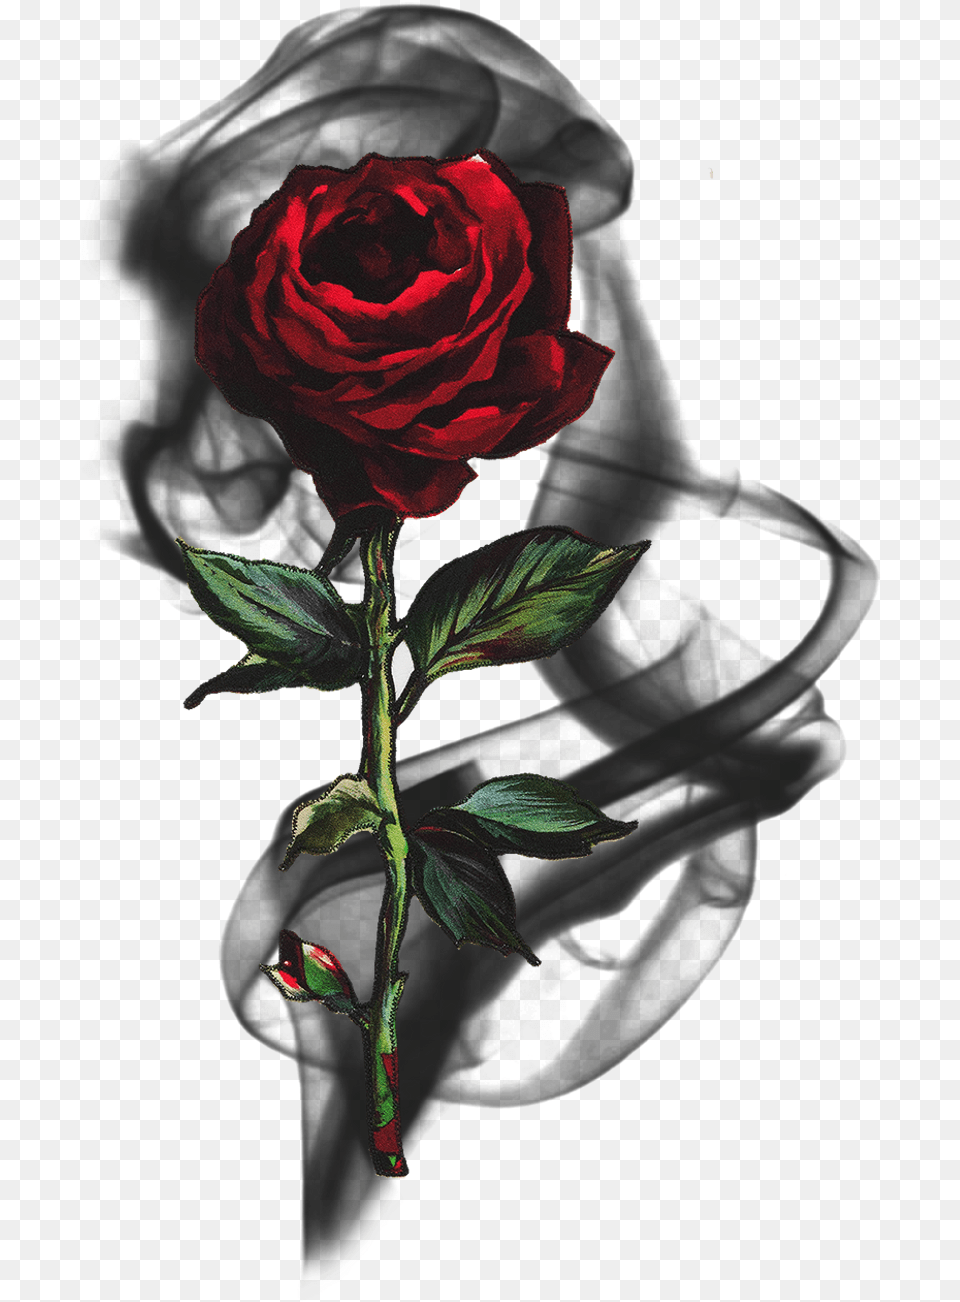 Rose Smoke Blackrose Rosesmoke Flowersmoke Aspect Dr, Flower, Plant Png Image